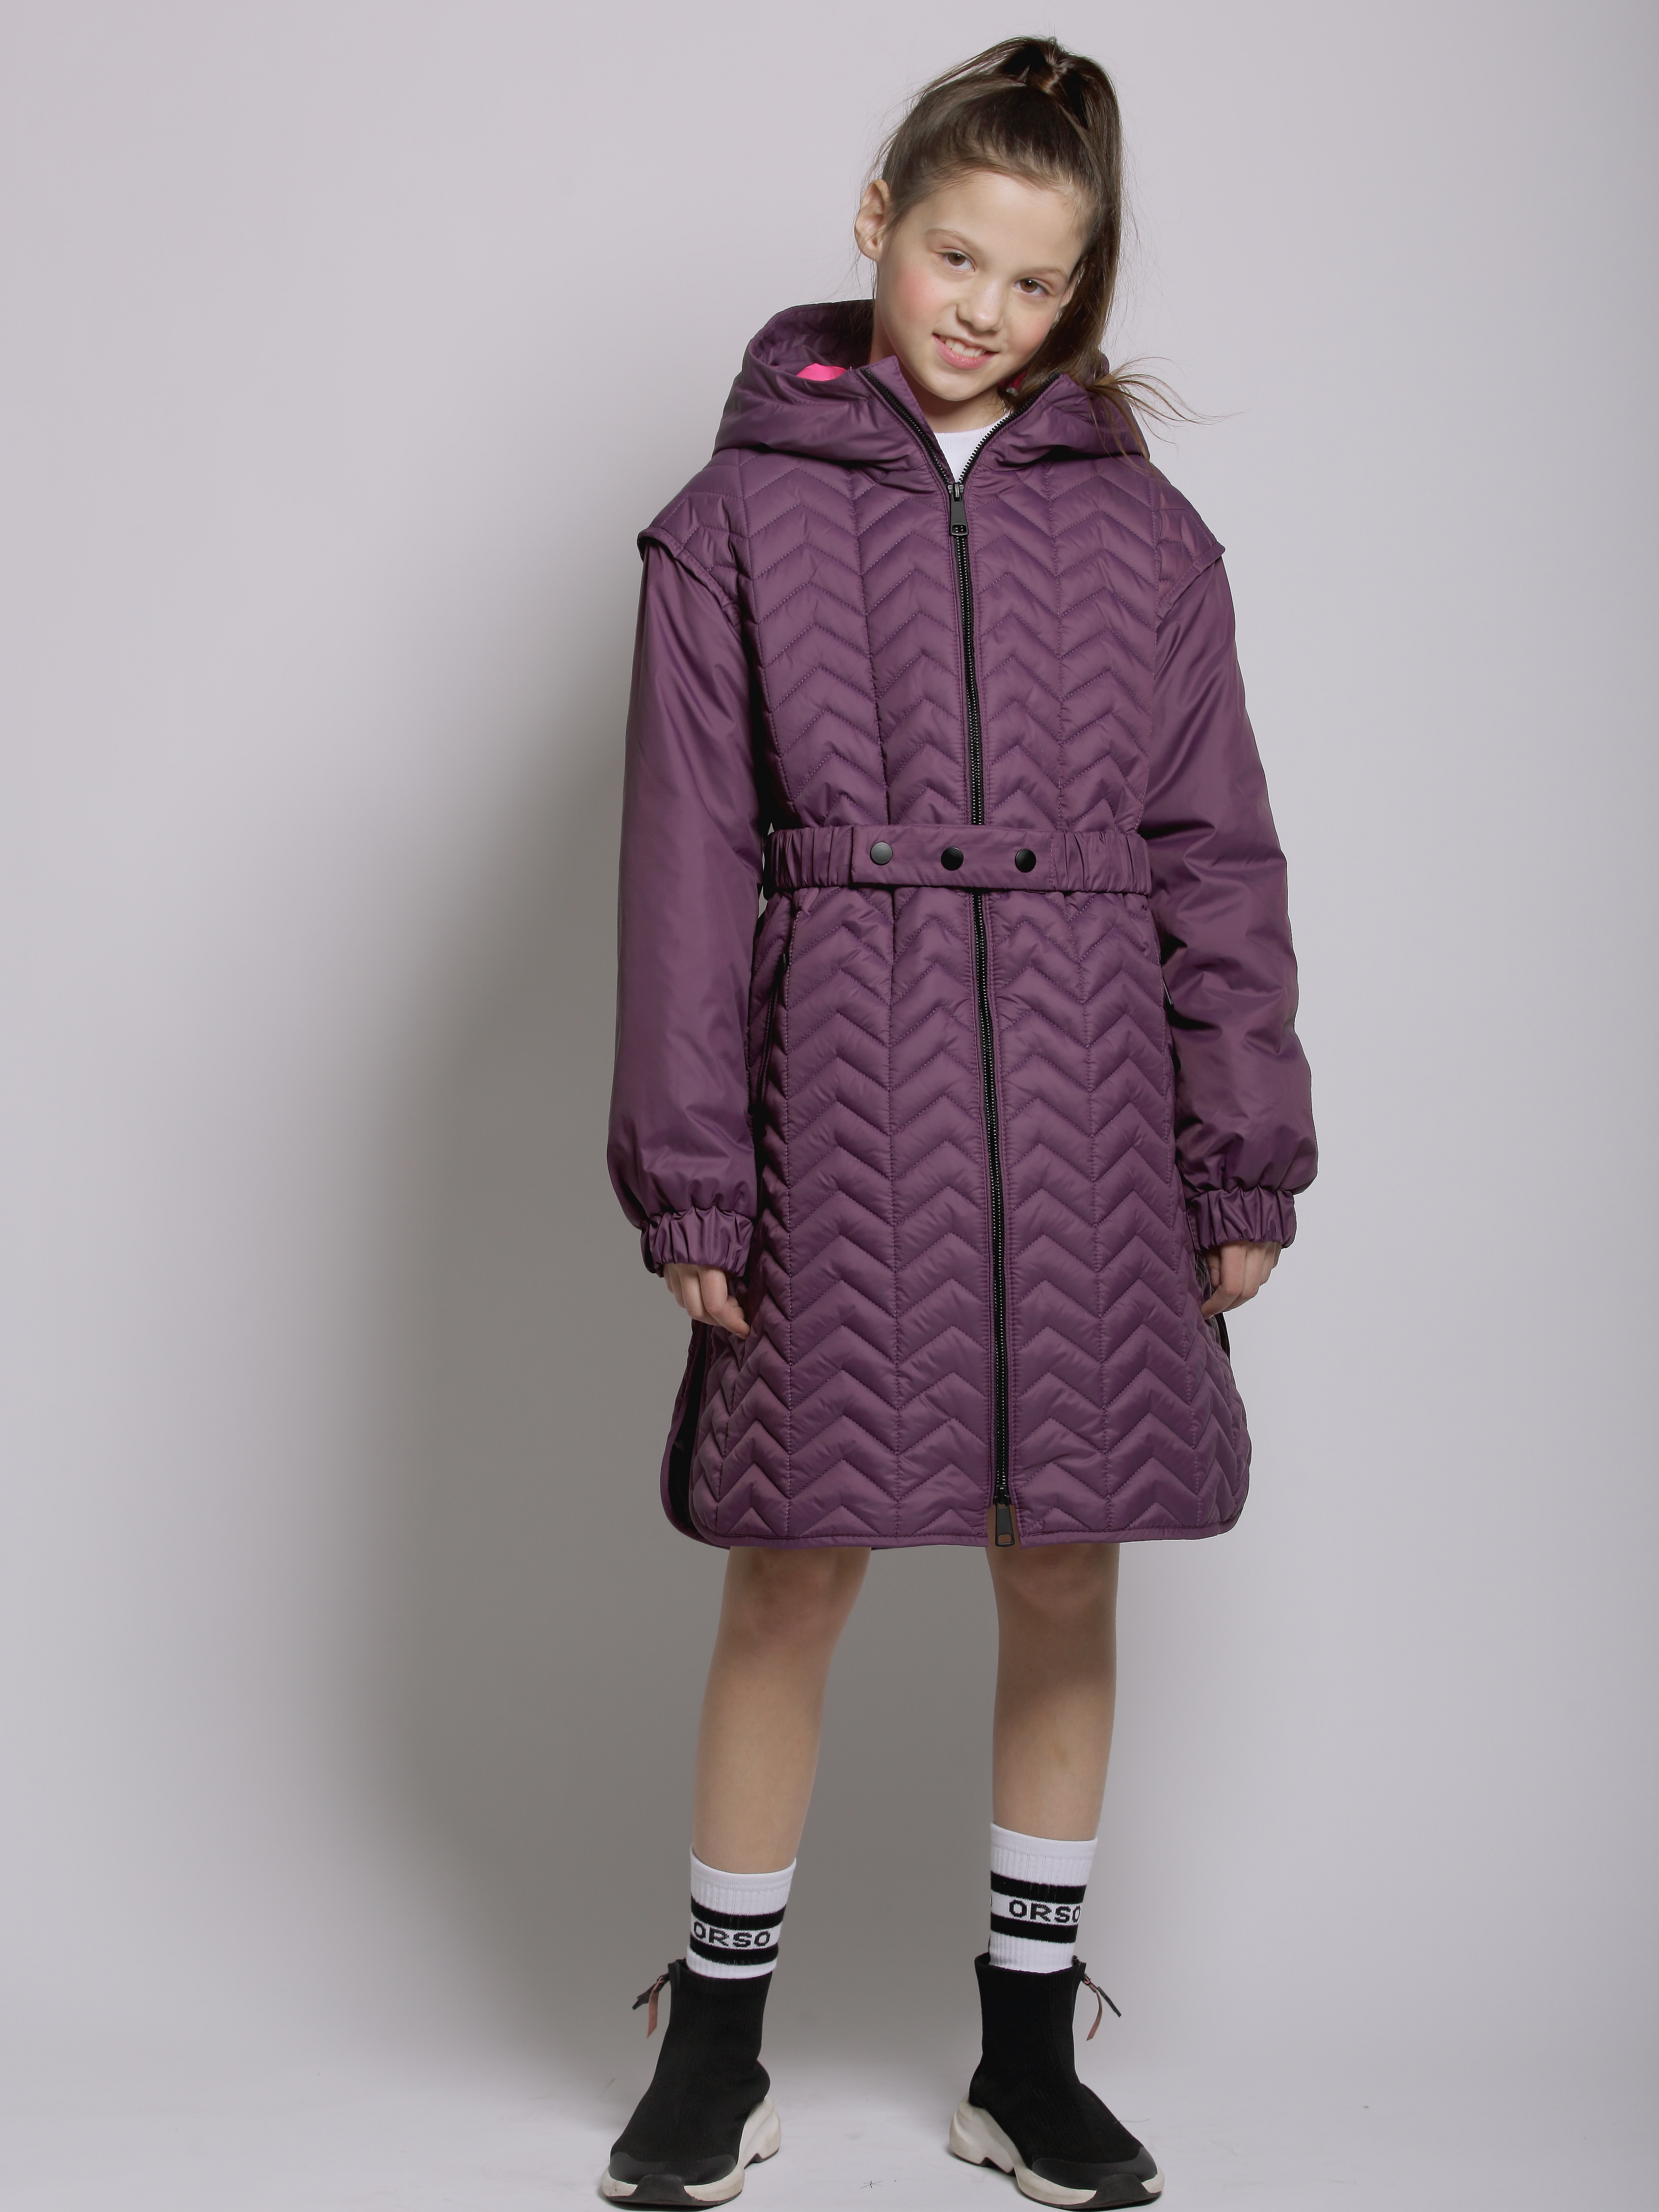 Пальто детское Orso Bianco Мелисса, темно-фиолетовый, ярко-розовый, 128